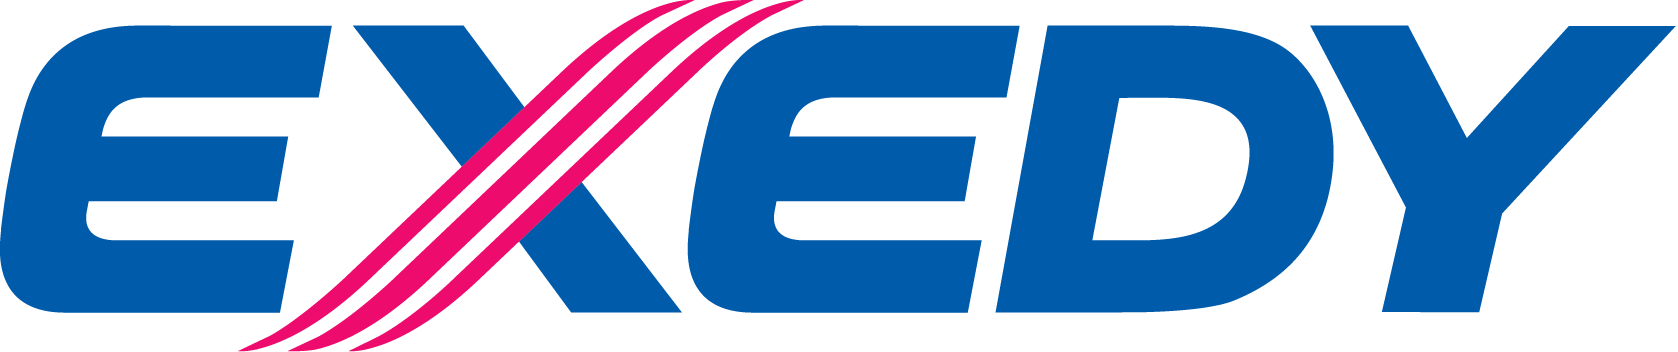 Логотип Exedy